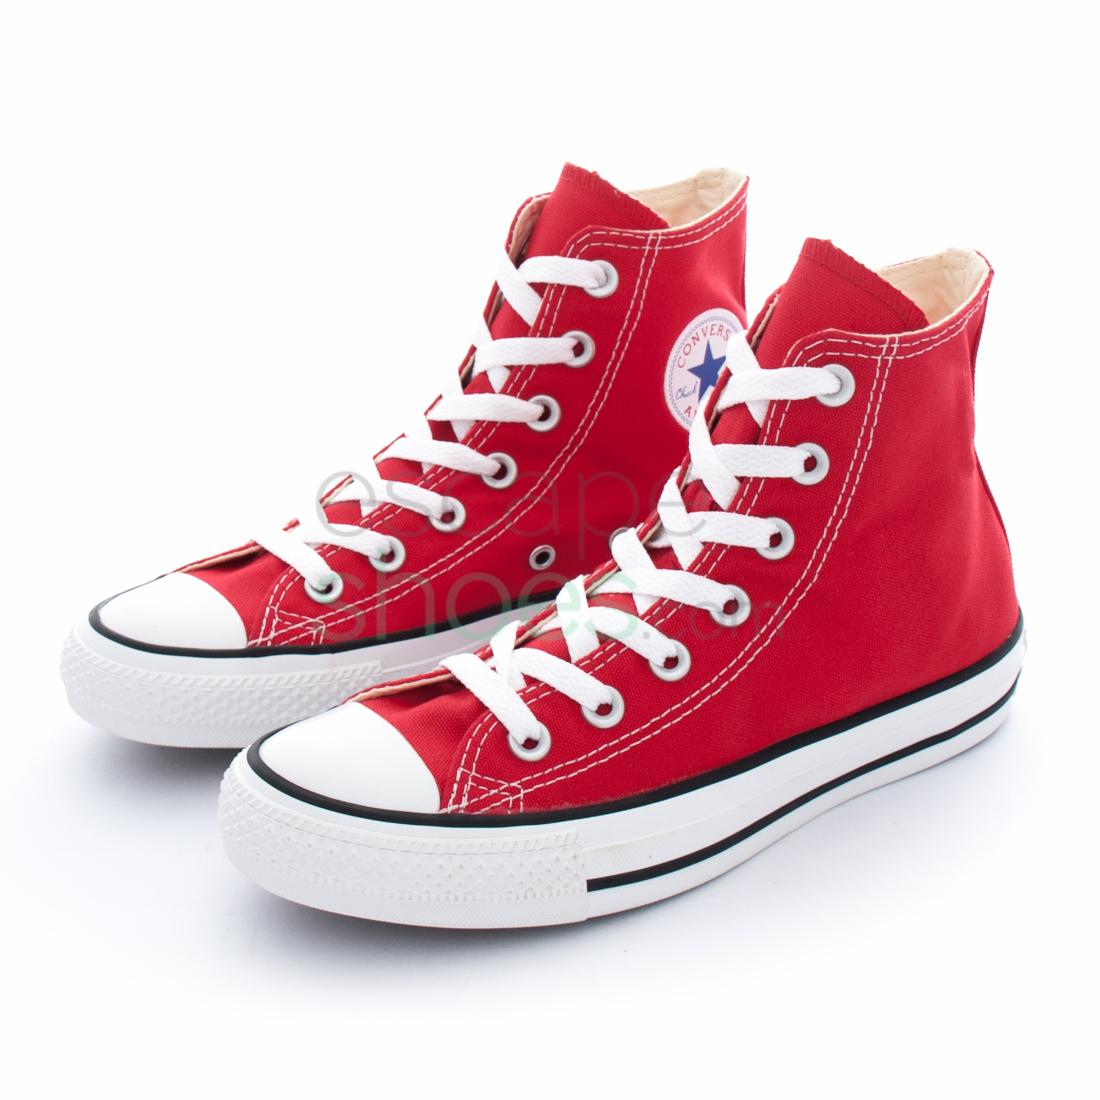 Conserveermiddel puree Uittreksel Sneakers CONVERSE All Star M9621 600 Hi Red